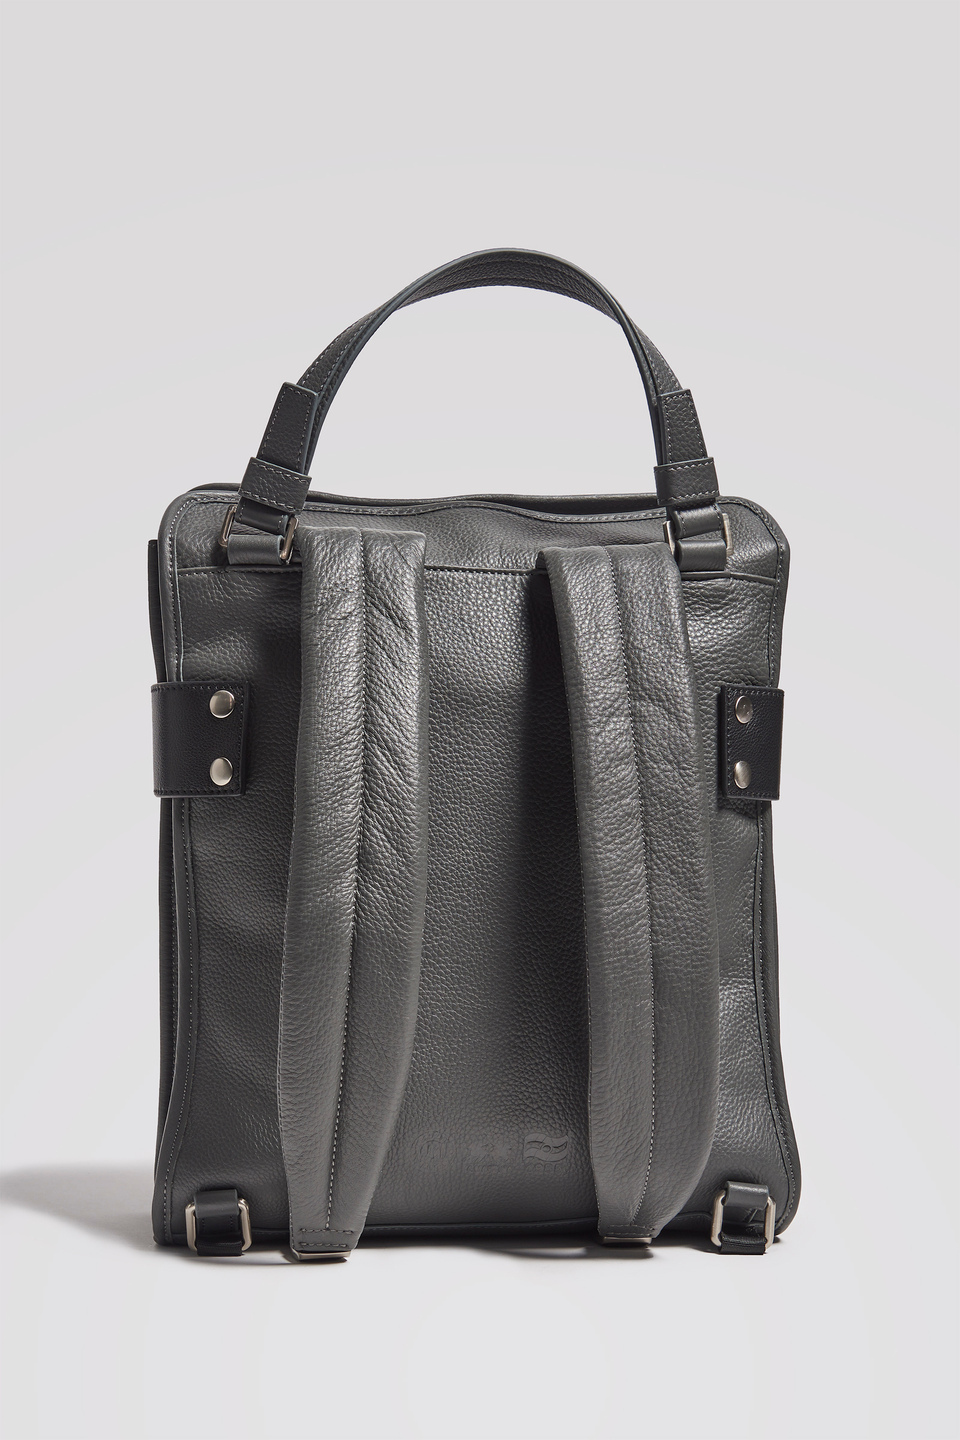 Rectangular hammered leather backpack | La Martina - Official Online Shop